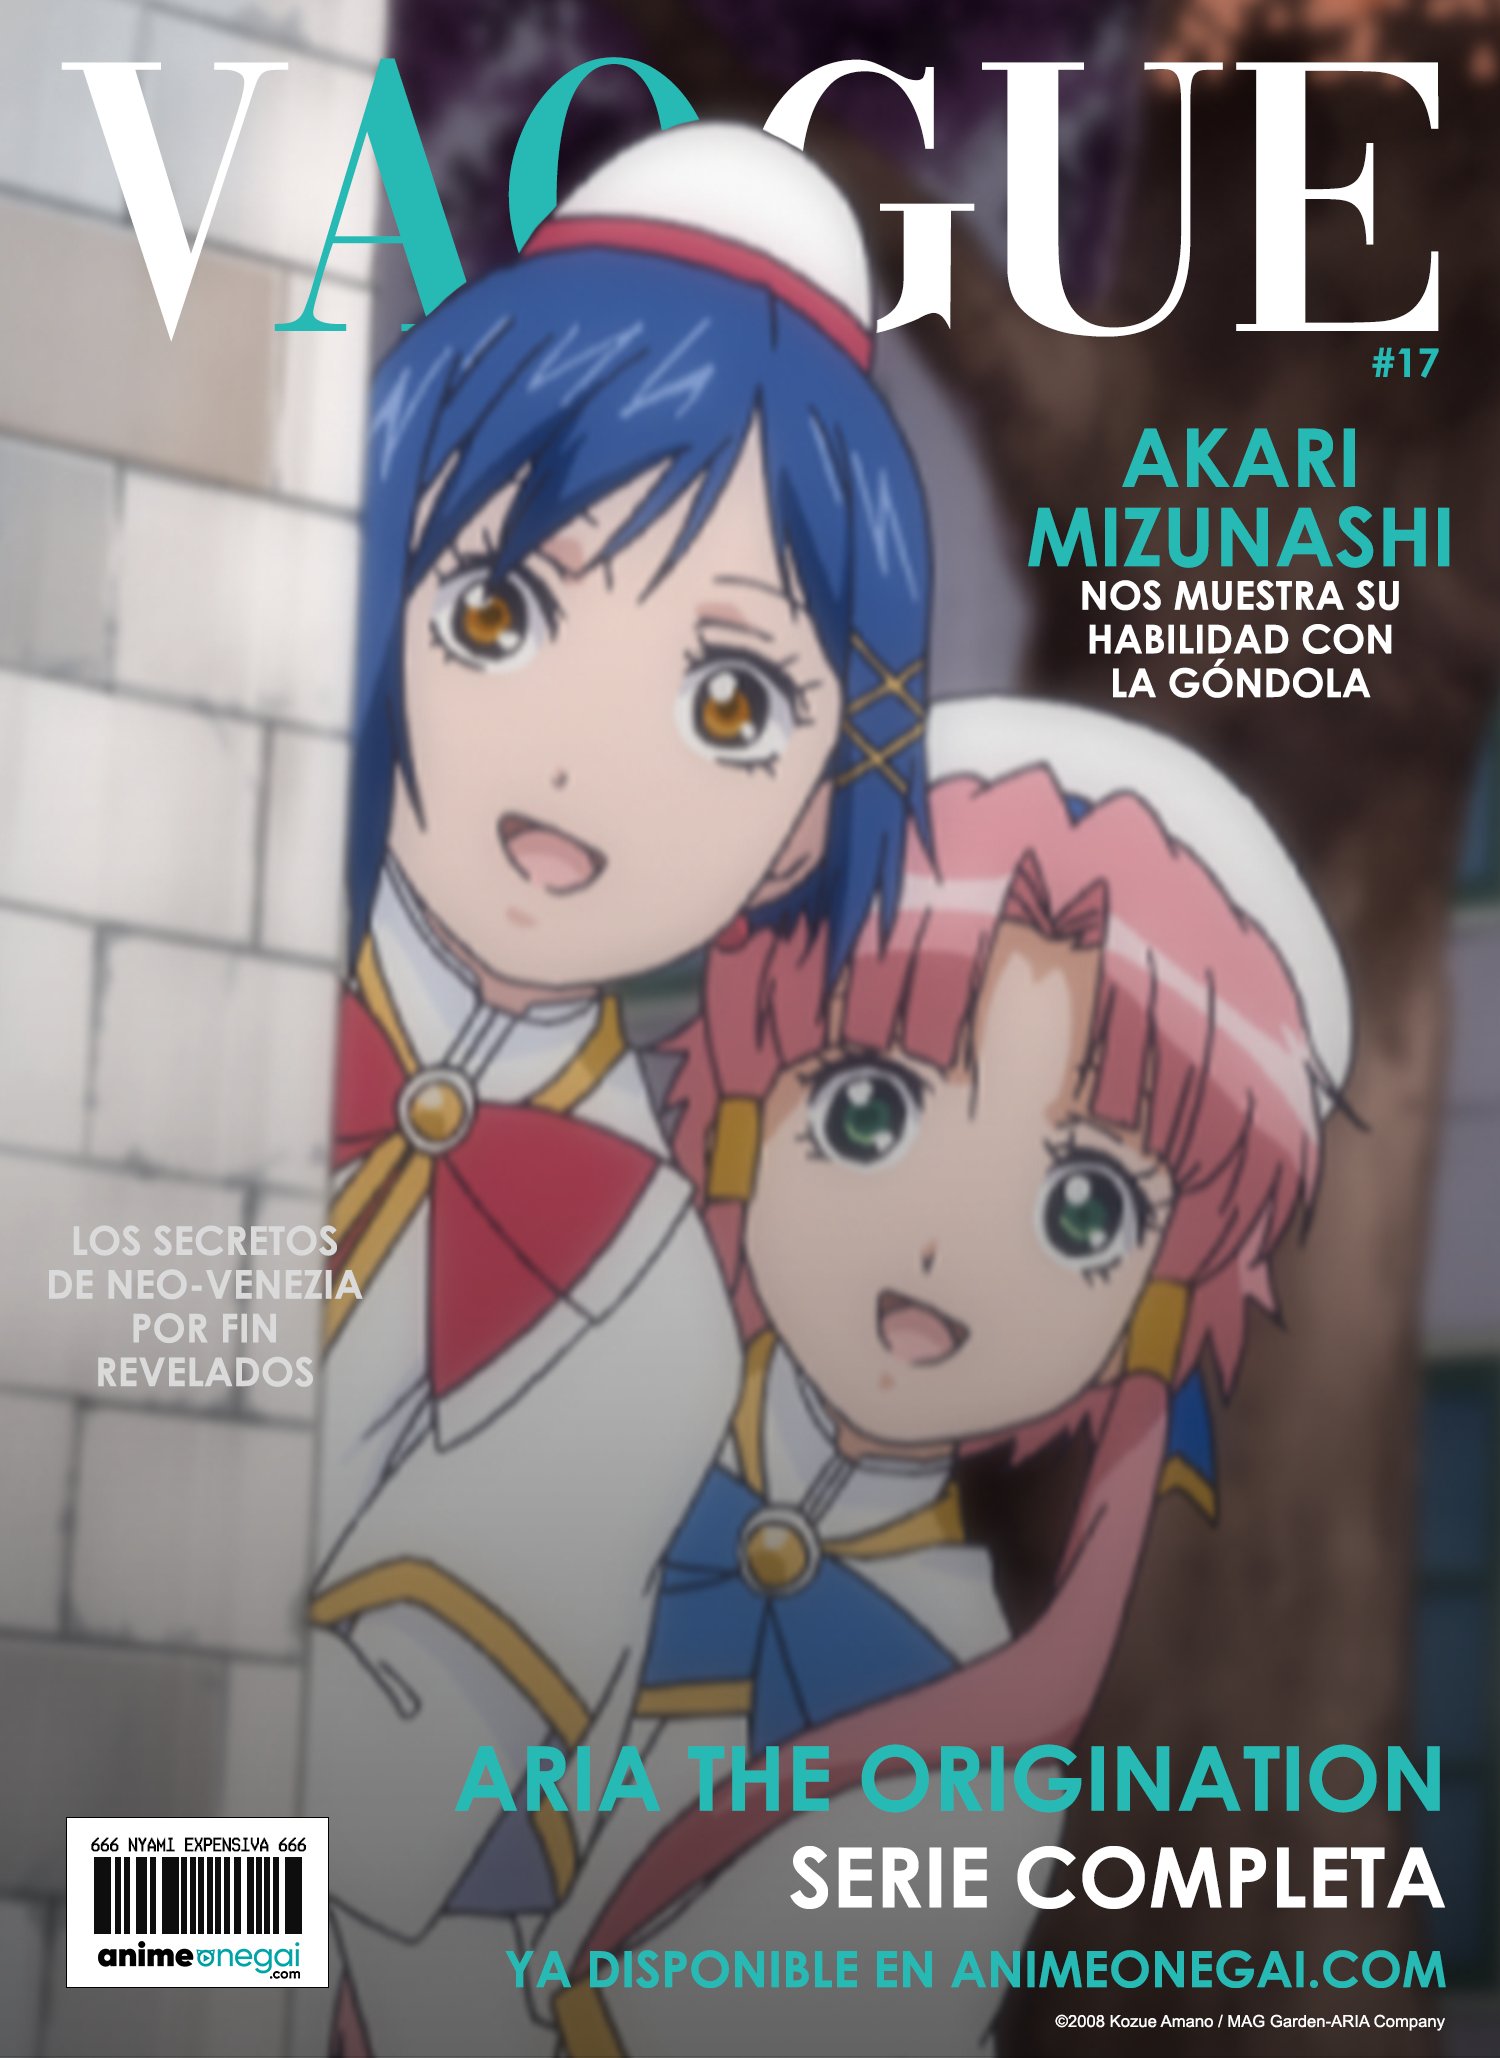 Anime Onegai Brasil on X: Está no ar a sua nova revista virtual com os  lançamentos da semana da  Quais títulos vocês estão  acompanhando? #anime #animesnobrasil #animedublado   / X